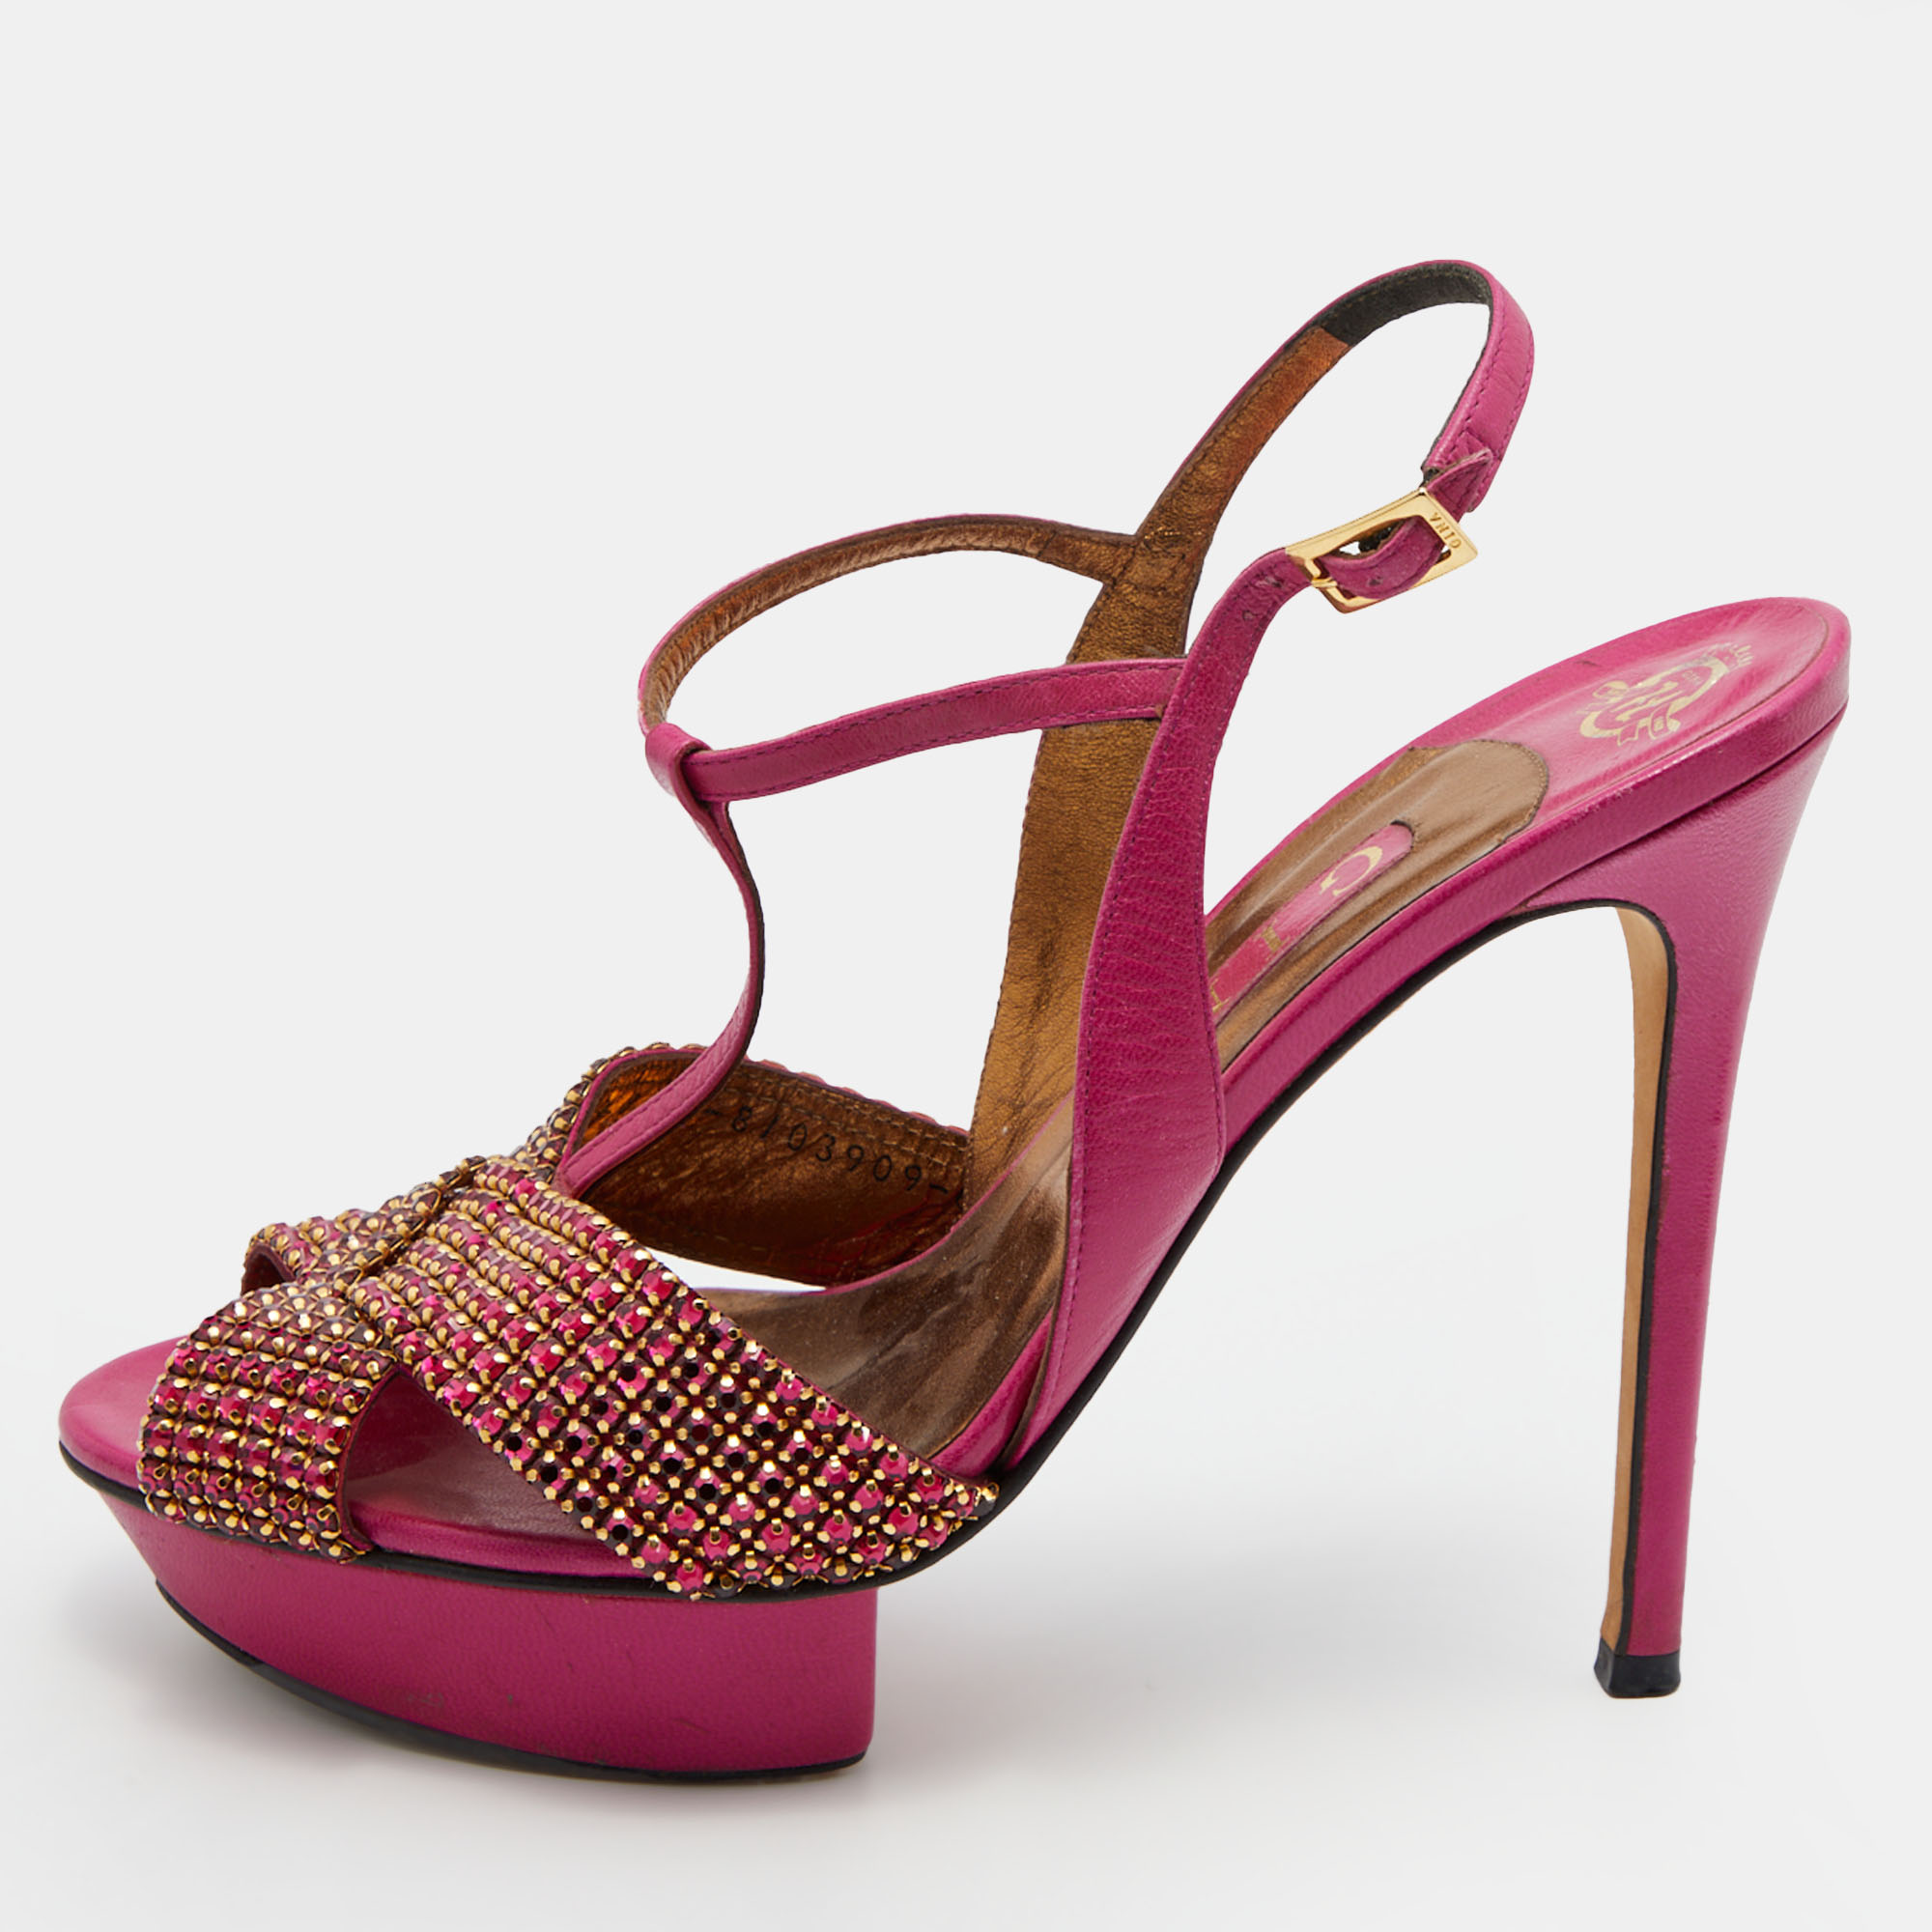 Gina pink leather sheridan crystal embellished platform t-strap sandals size 39